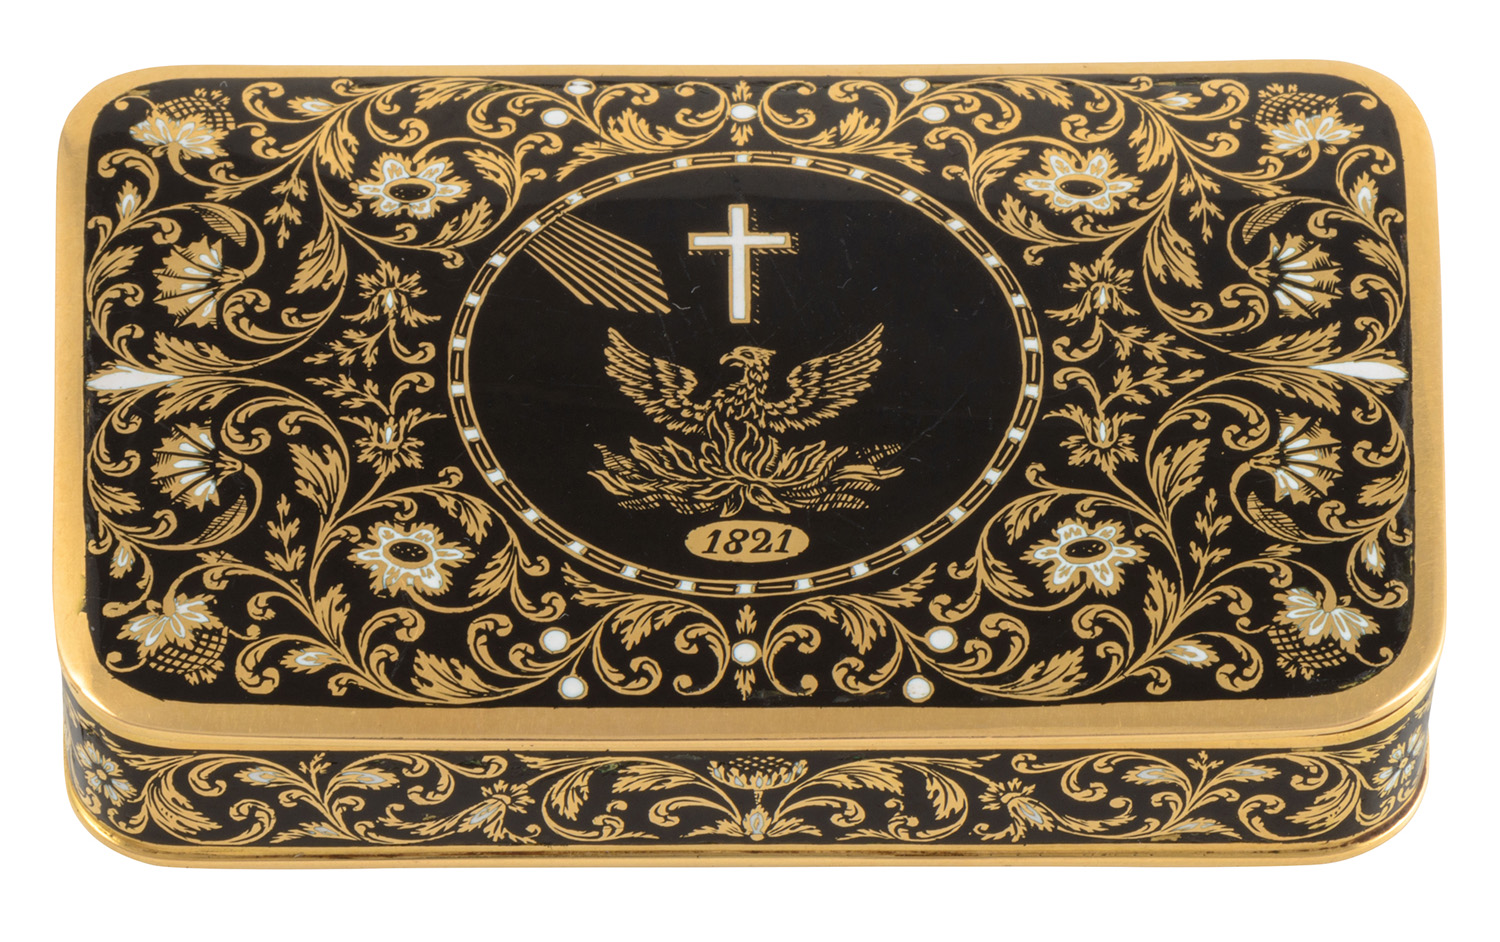 Χρυσή ταμπακιέρα του Ιωάννη Καποδίστρια με τον αναγεννώμενο Φοίνικα